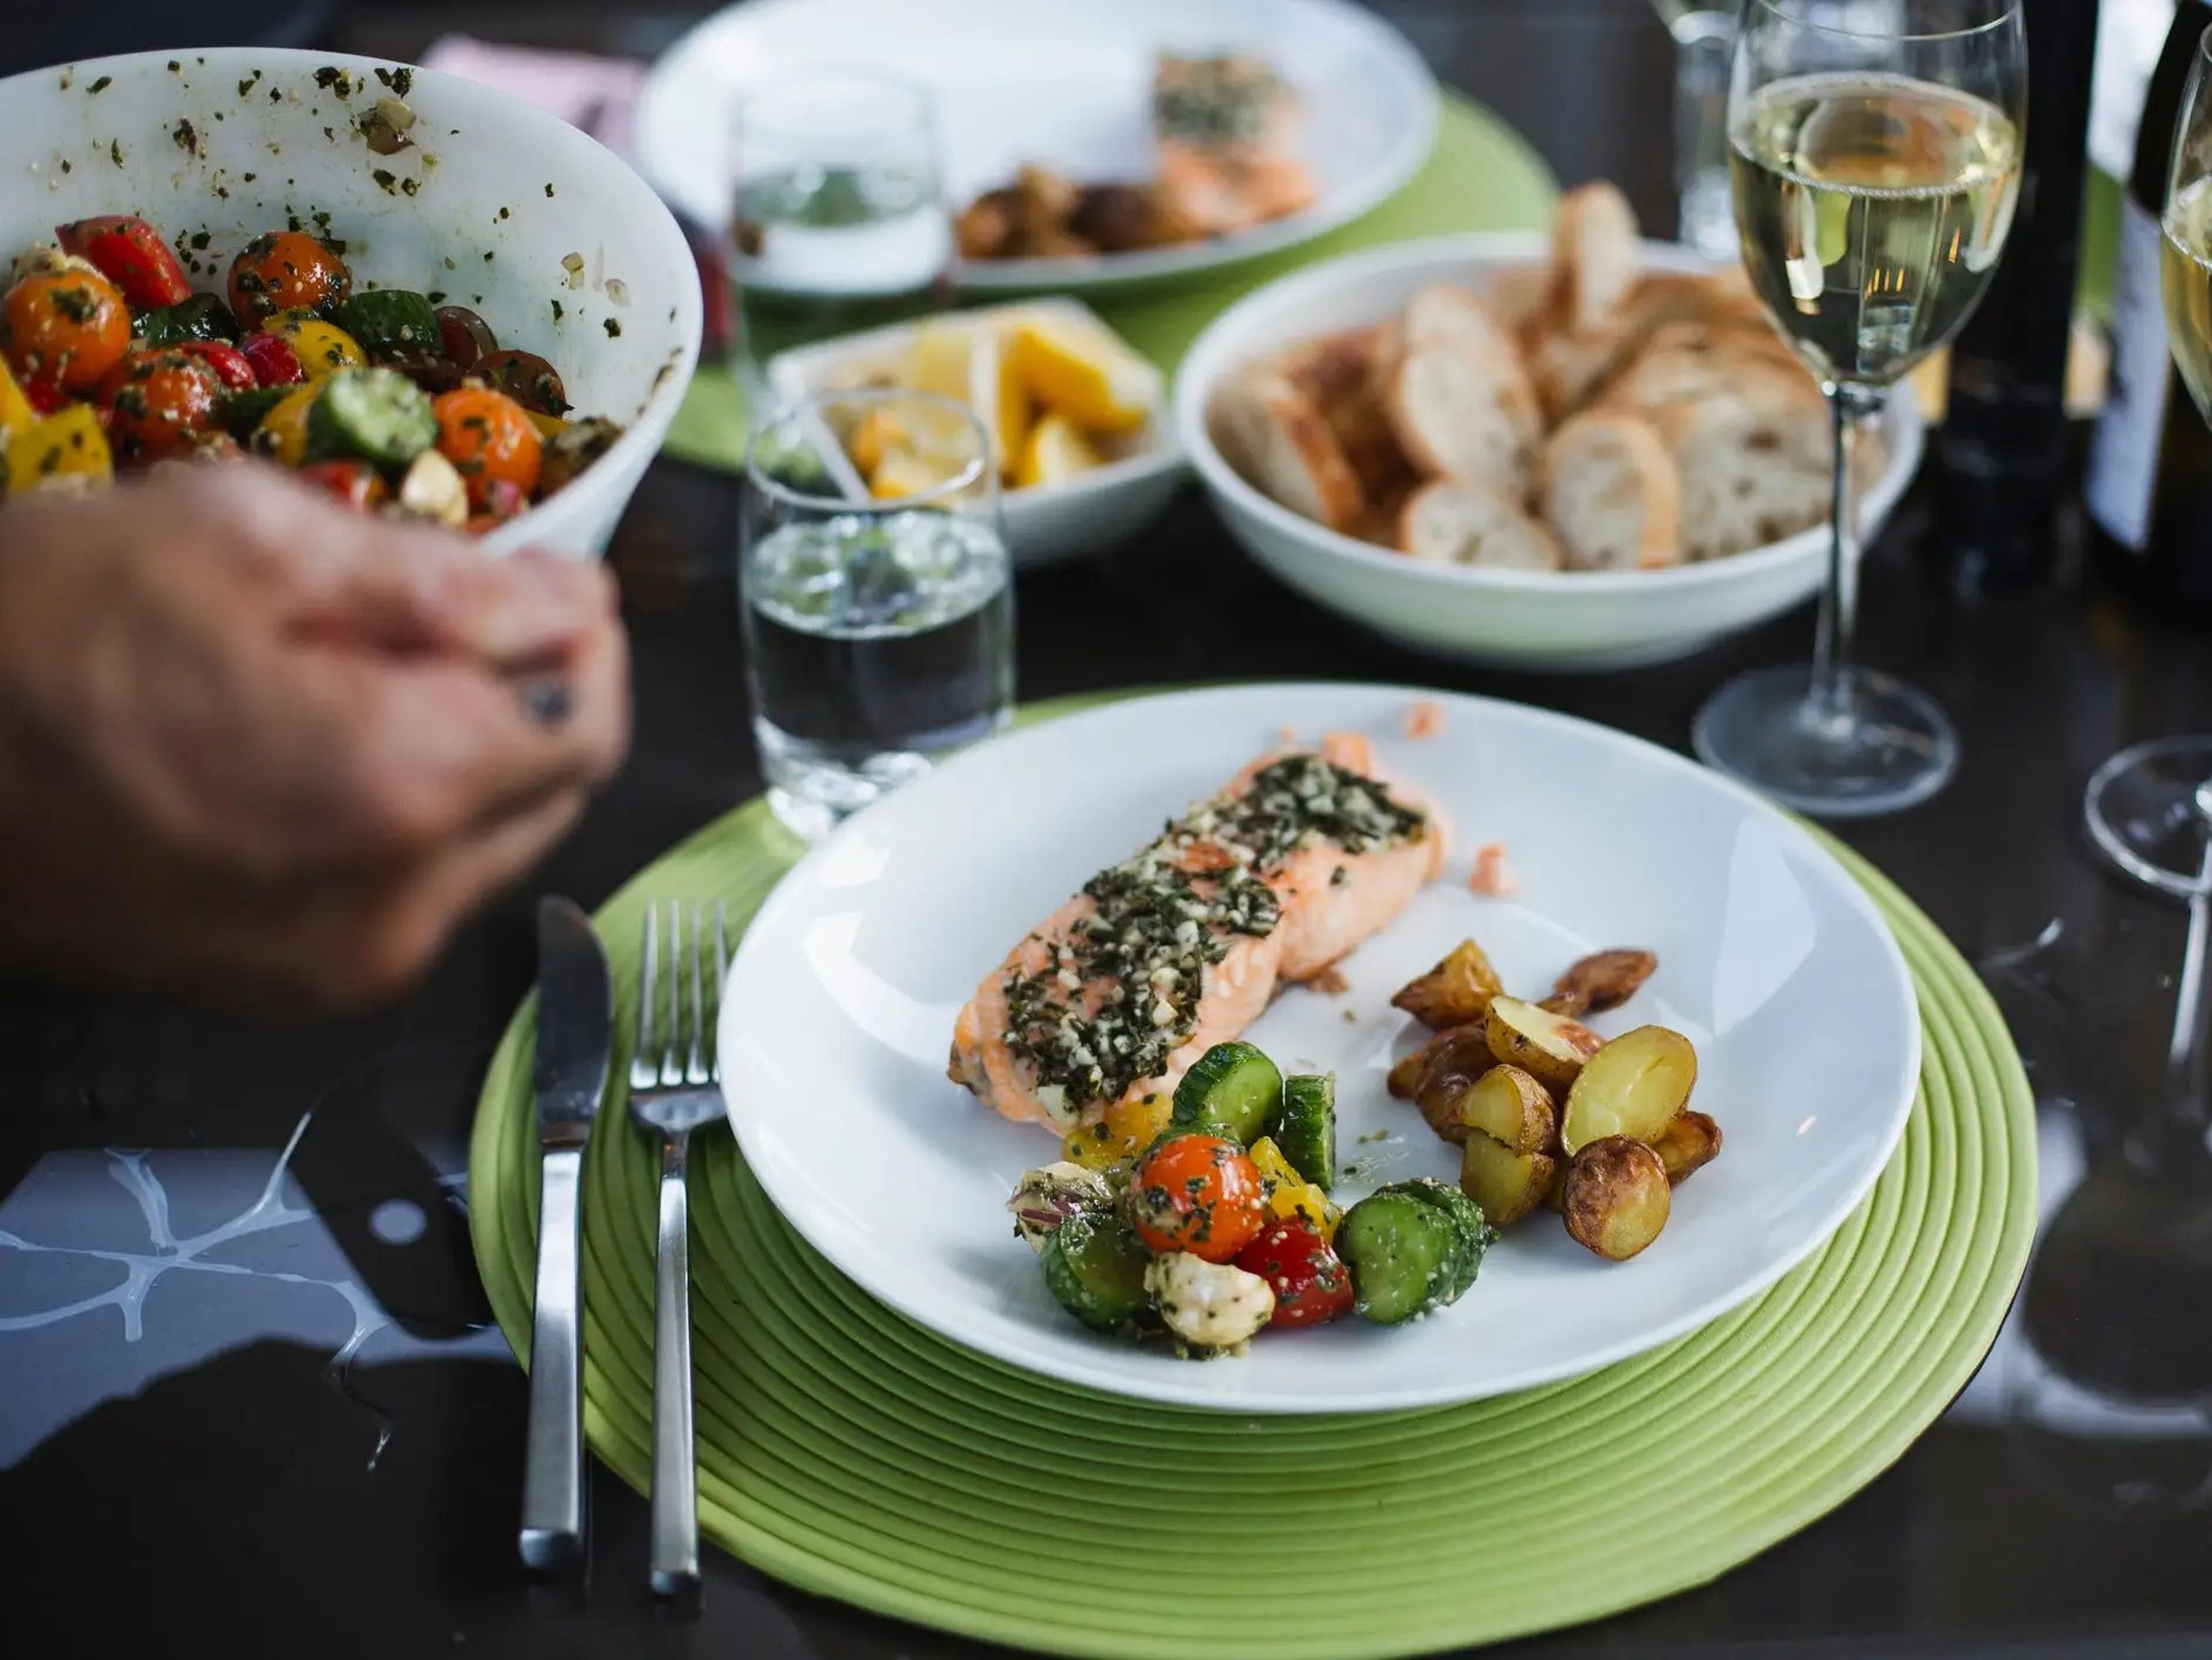 La dieta mediterránea hace hincapié en los alimentos integrales, como las verduras, los carbohidratos complejos, las grasas saludables, como el aceite de oliva, y las proteínas magras, como el marisco. También incluye vino tinto con moderación.